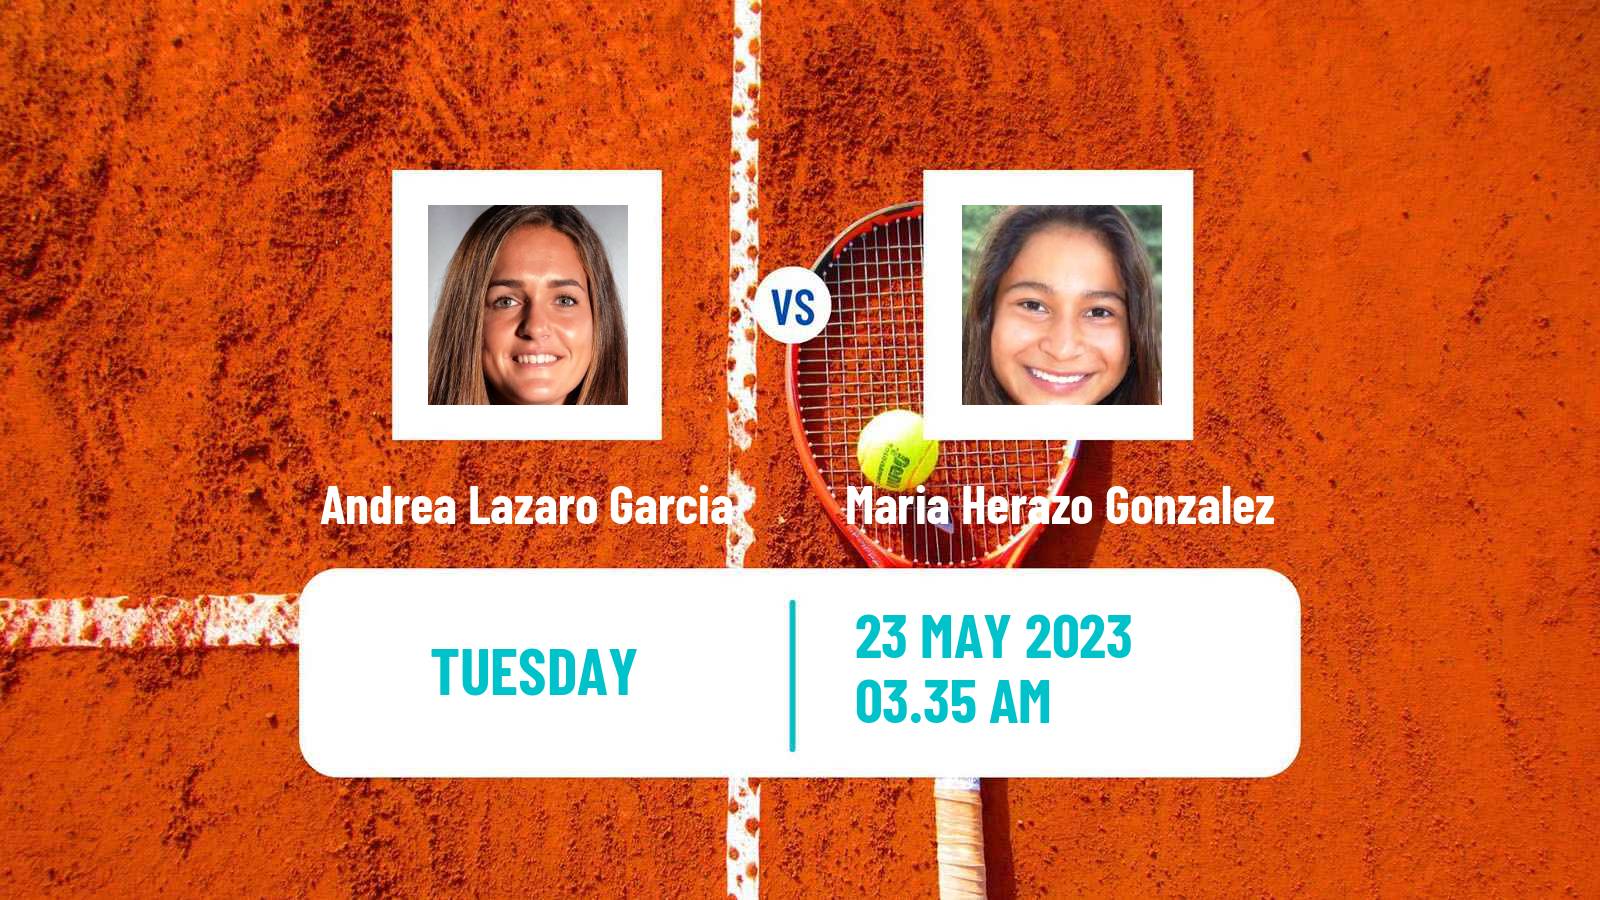 Tennis ITF W60 Grado Women Andrea Lazaro Garcia - Maria Herazo Gonzalez